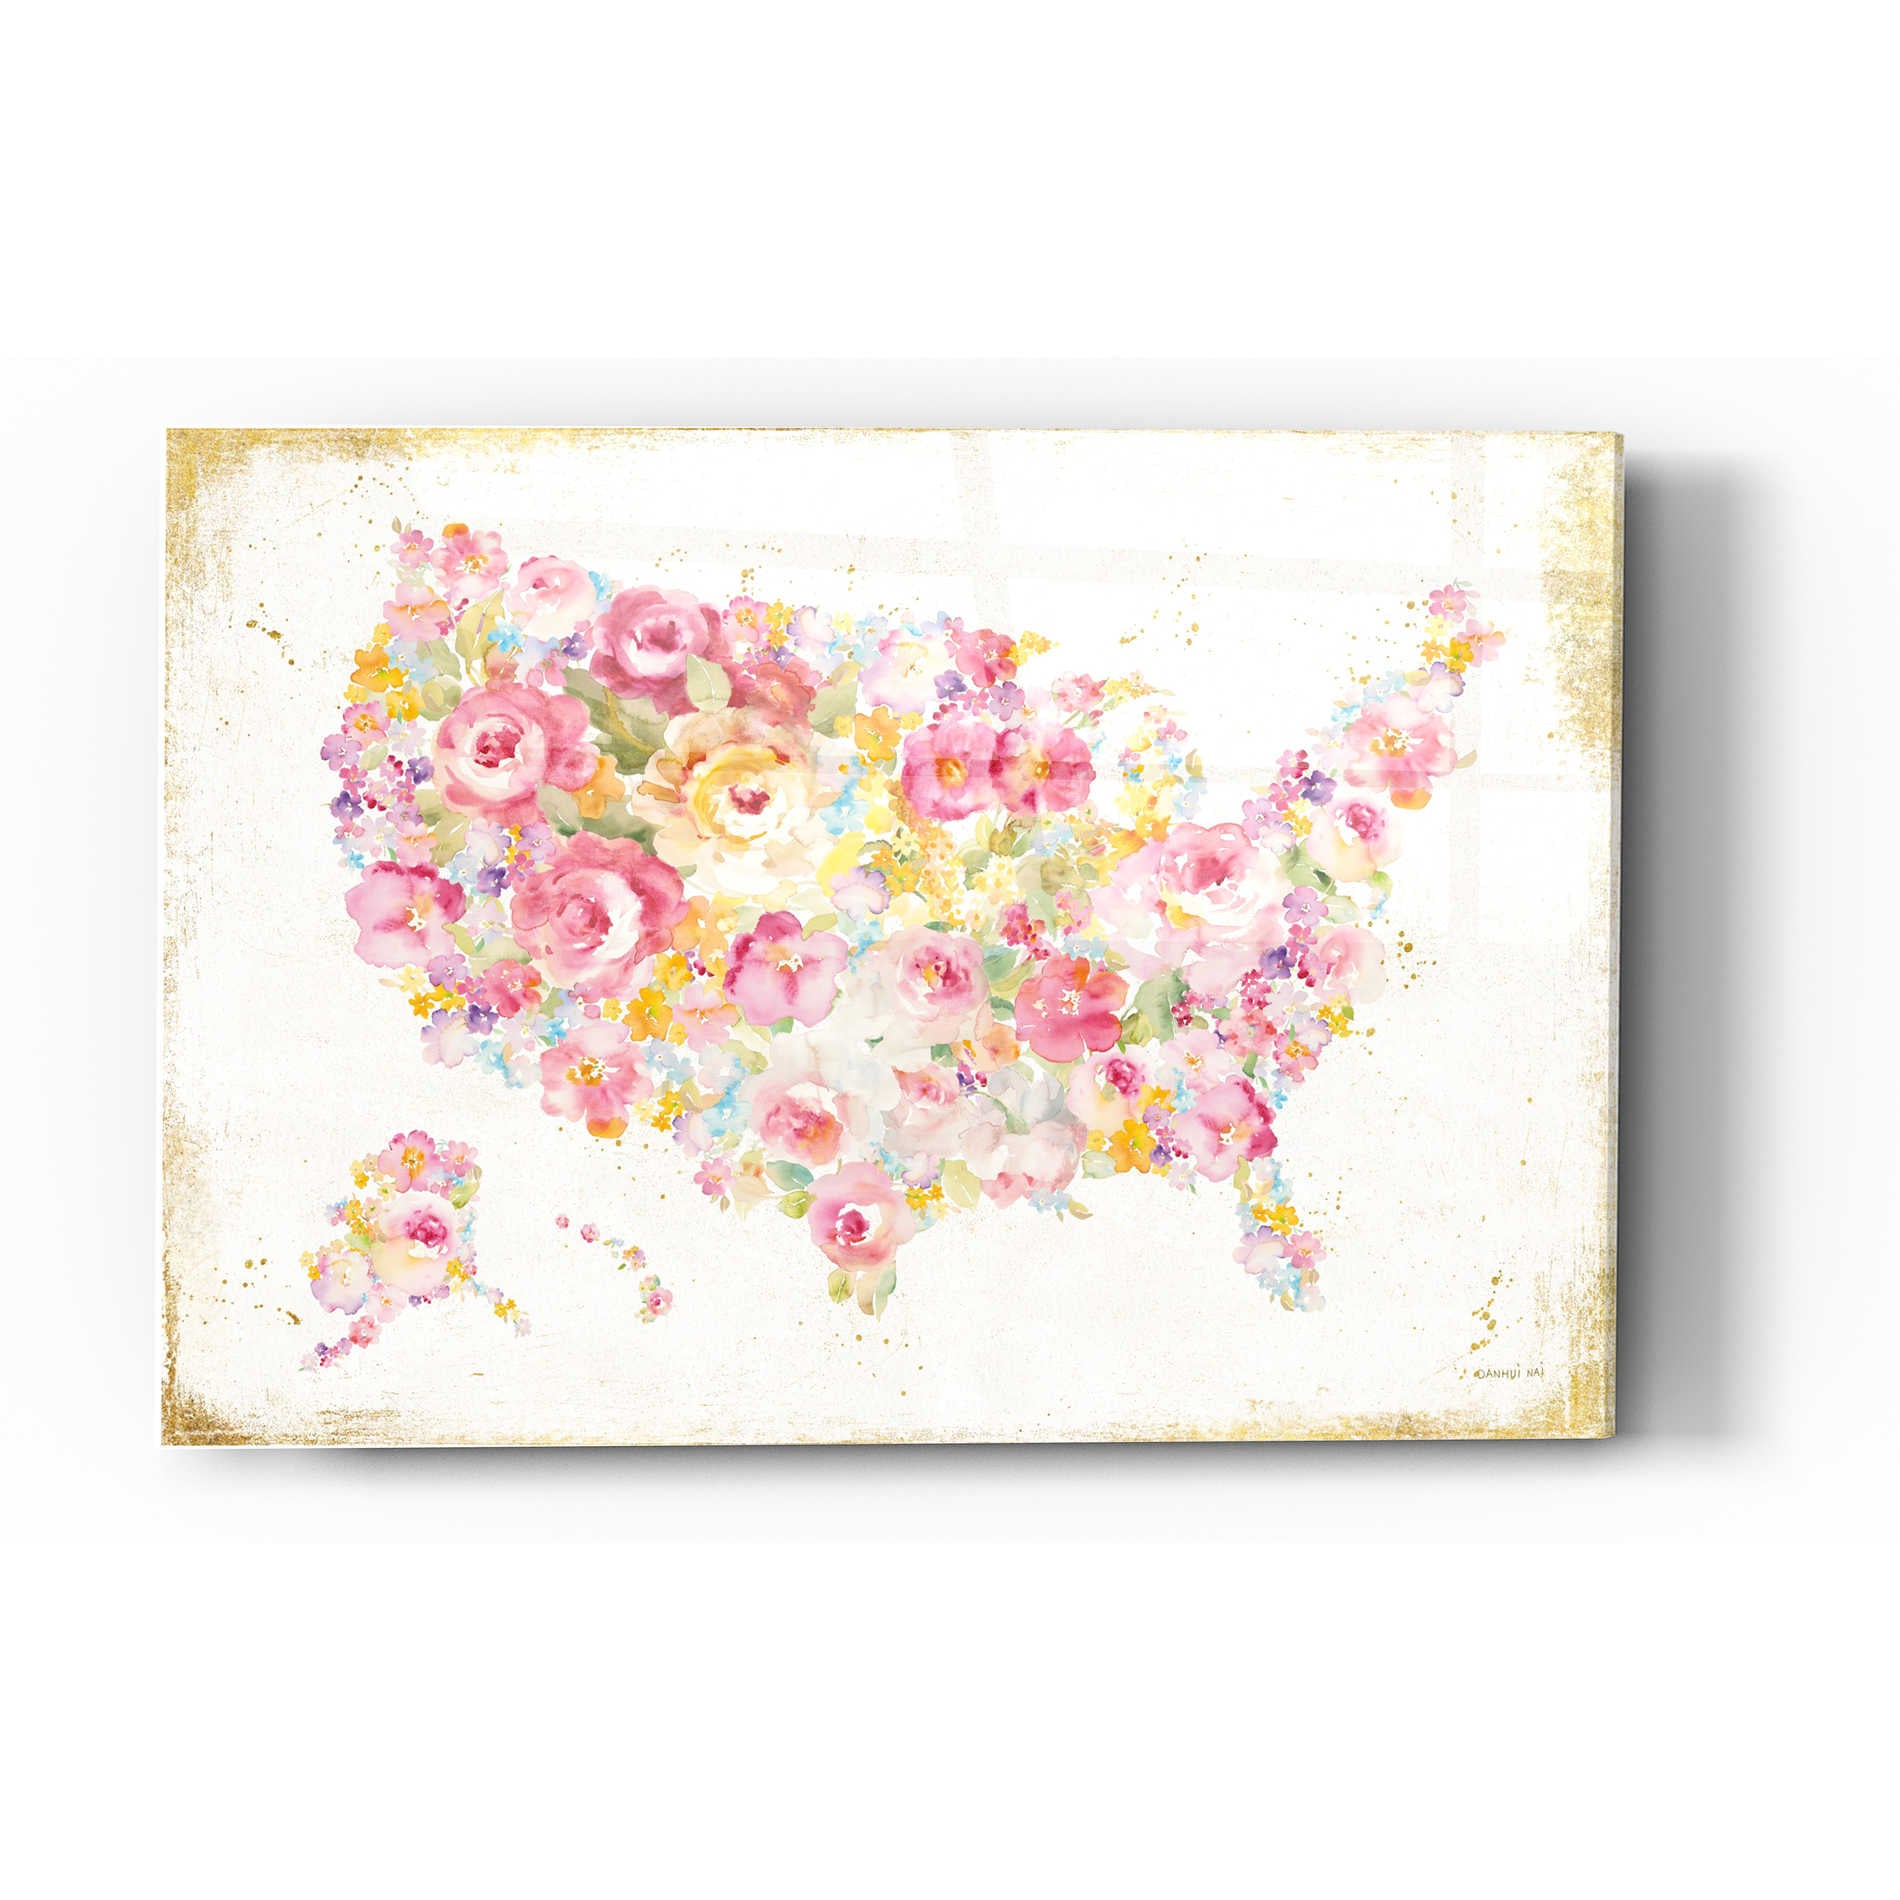 Epic Art 'Midsummer USA' by Danhui Nai, Acrylic Glass Wall Art,24x36